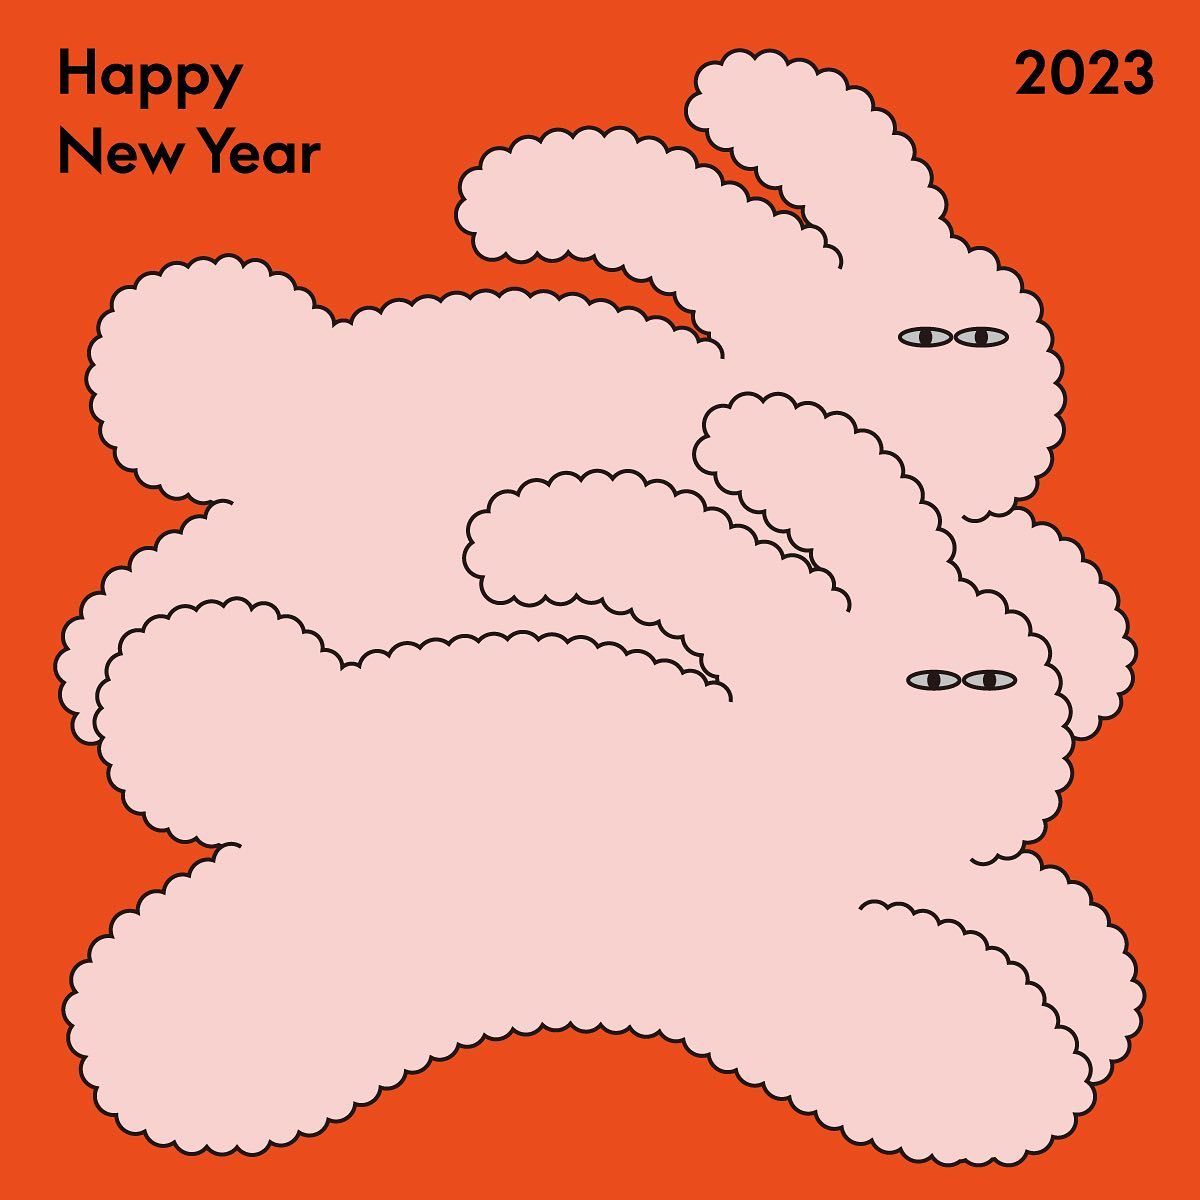 生肖兔年贺卡设计,温馨的兔年新年贺卡设计作品欣赏。